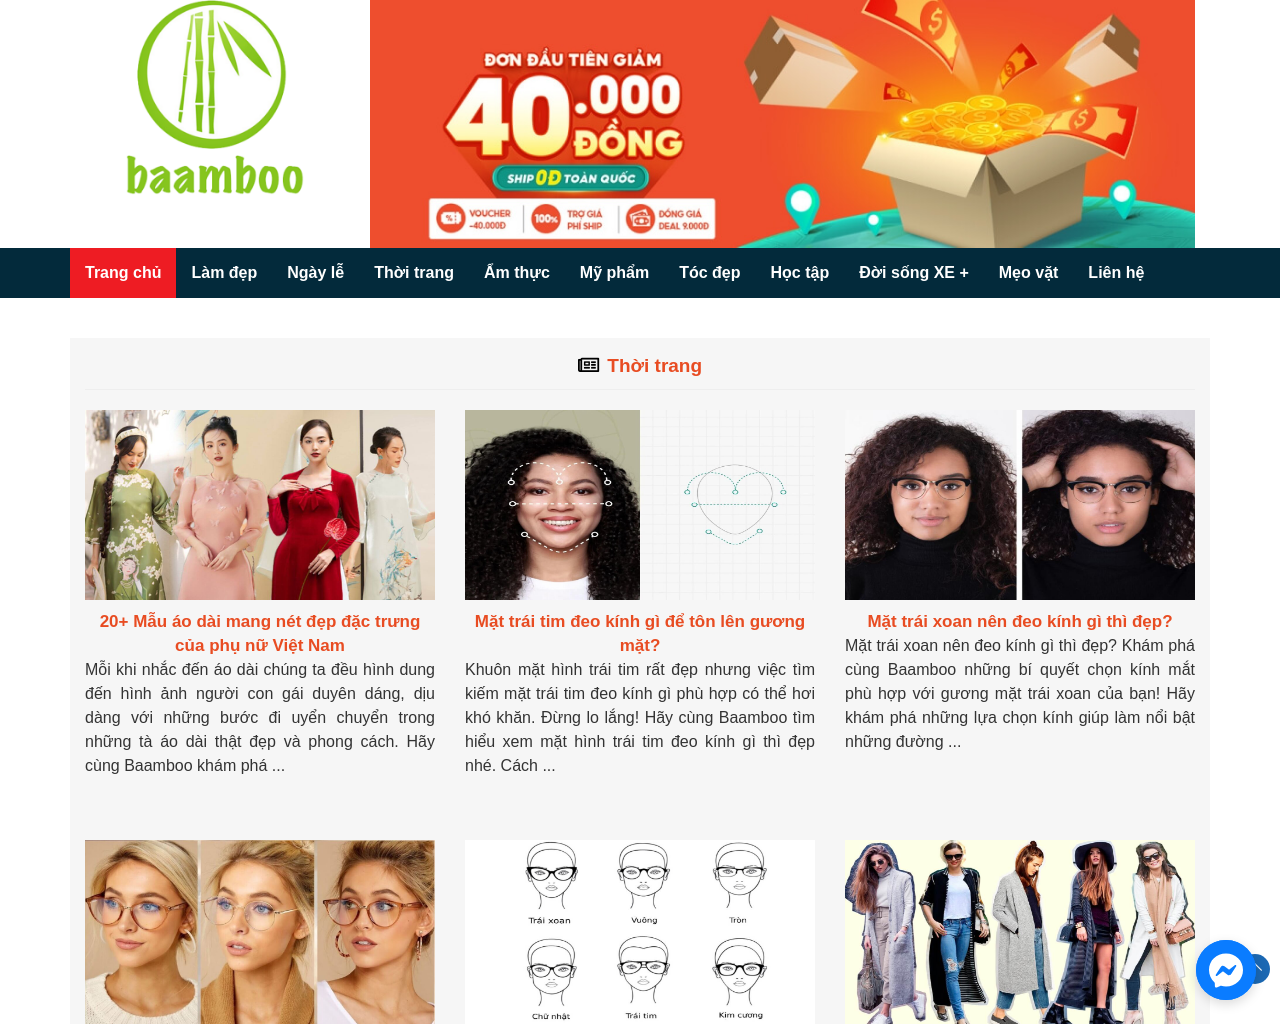 baamboo.com